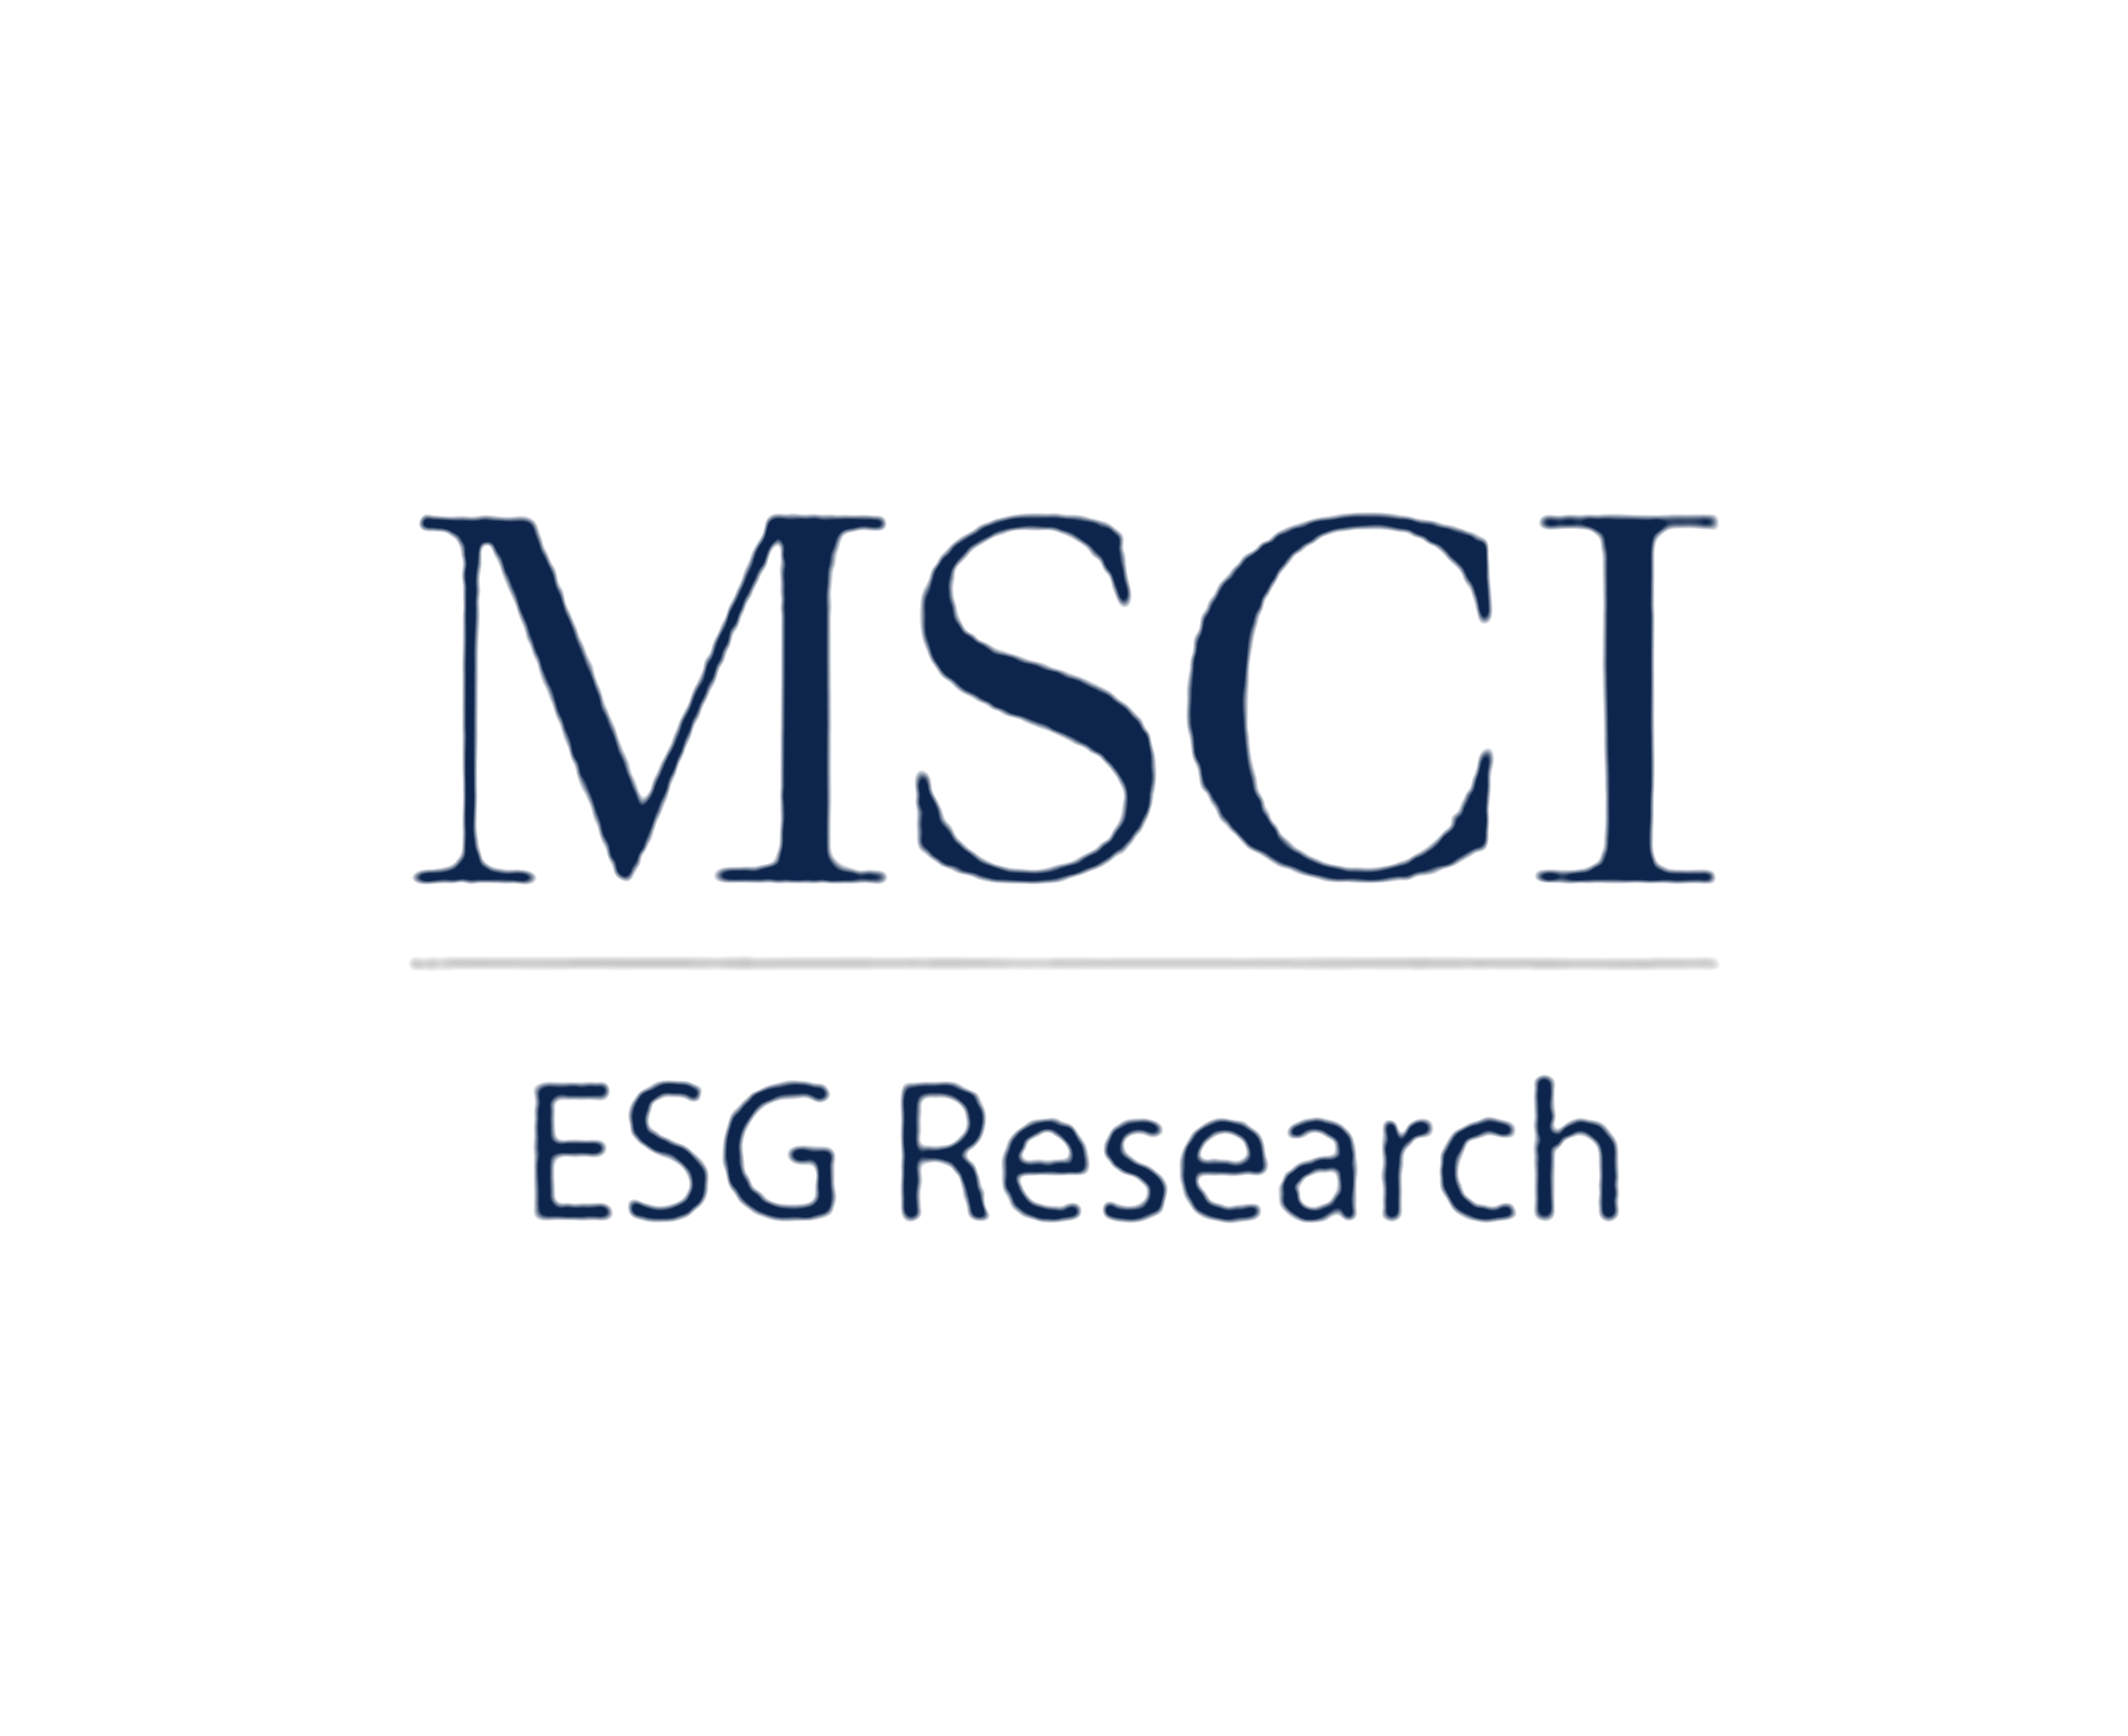 近日，国际权威指数机构明晟公司(MSCI)公布最新结果，工业富联ESG评级上调至BB级，这也是工业富联2021年内第二次获该ESG评级上调。在各项ESG细分评分中，MSCI尤其认可工业富联“Governance”（公司治理）类及其中公司行为方面的表现，得分优于行业平均水平。MSCI评级报告进一步指出，工业富联在劳动管理中强化员工参与、员工培训，支撑了评级的提升。工业富联已建立覆盖全员的工会以促进员工权益保护，并通过年度定期开展的员工满意度调查听取员工意见并推动改善。此外建立了覆盖全体正式员工及非